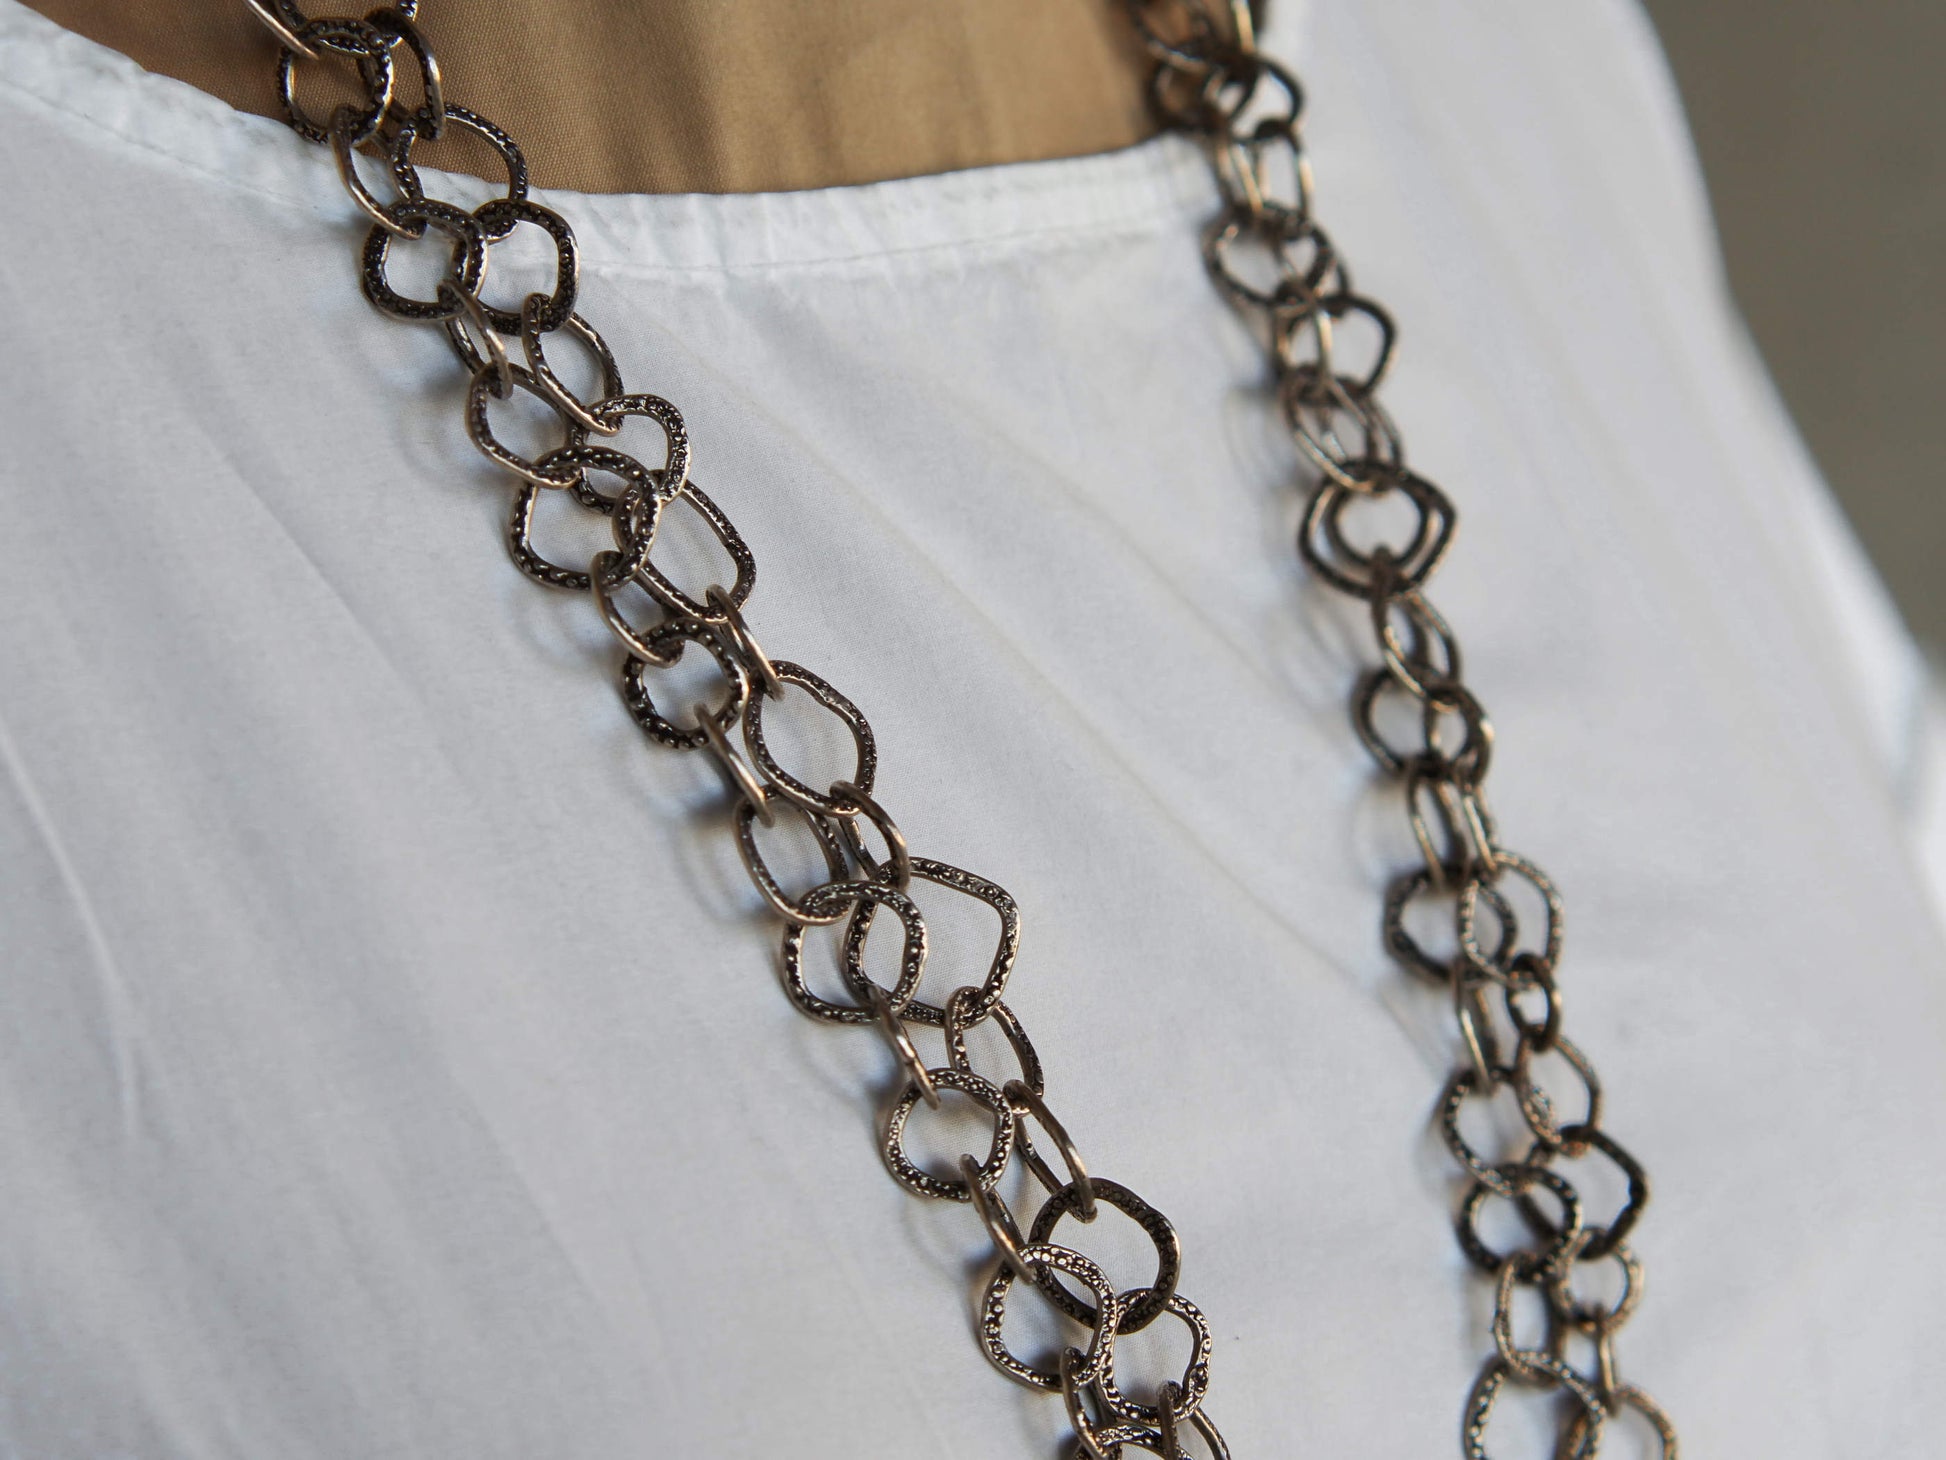 collana indiana lavorata a catena con elementi incisi in argento 925. la lunghezza consente di indossarla in moltepilci modi. lavorata artigianalmente. pezzo unico.  lunghezza 160cm, spessore 1.2 cm, peso 112 gr